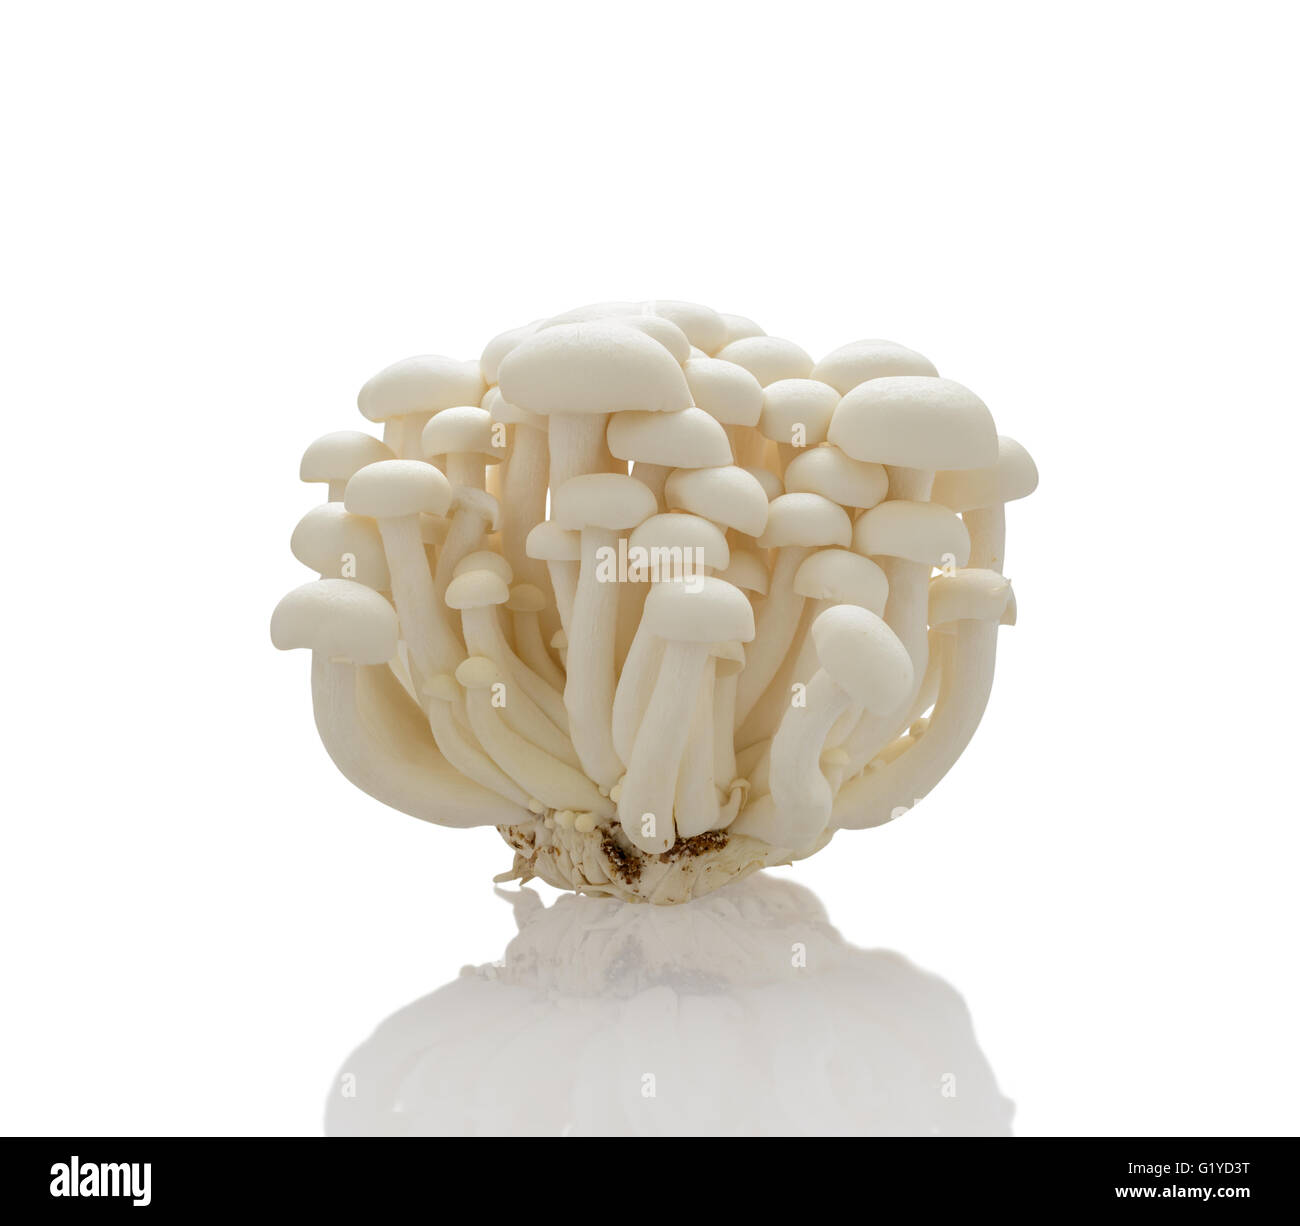 White shimeji mushrooms on white background Stock Photo